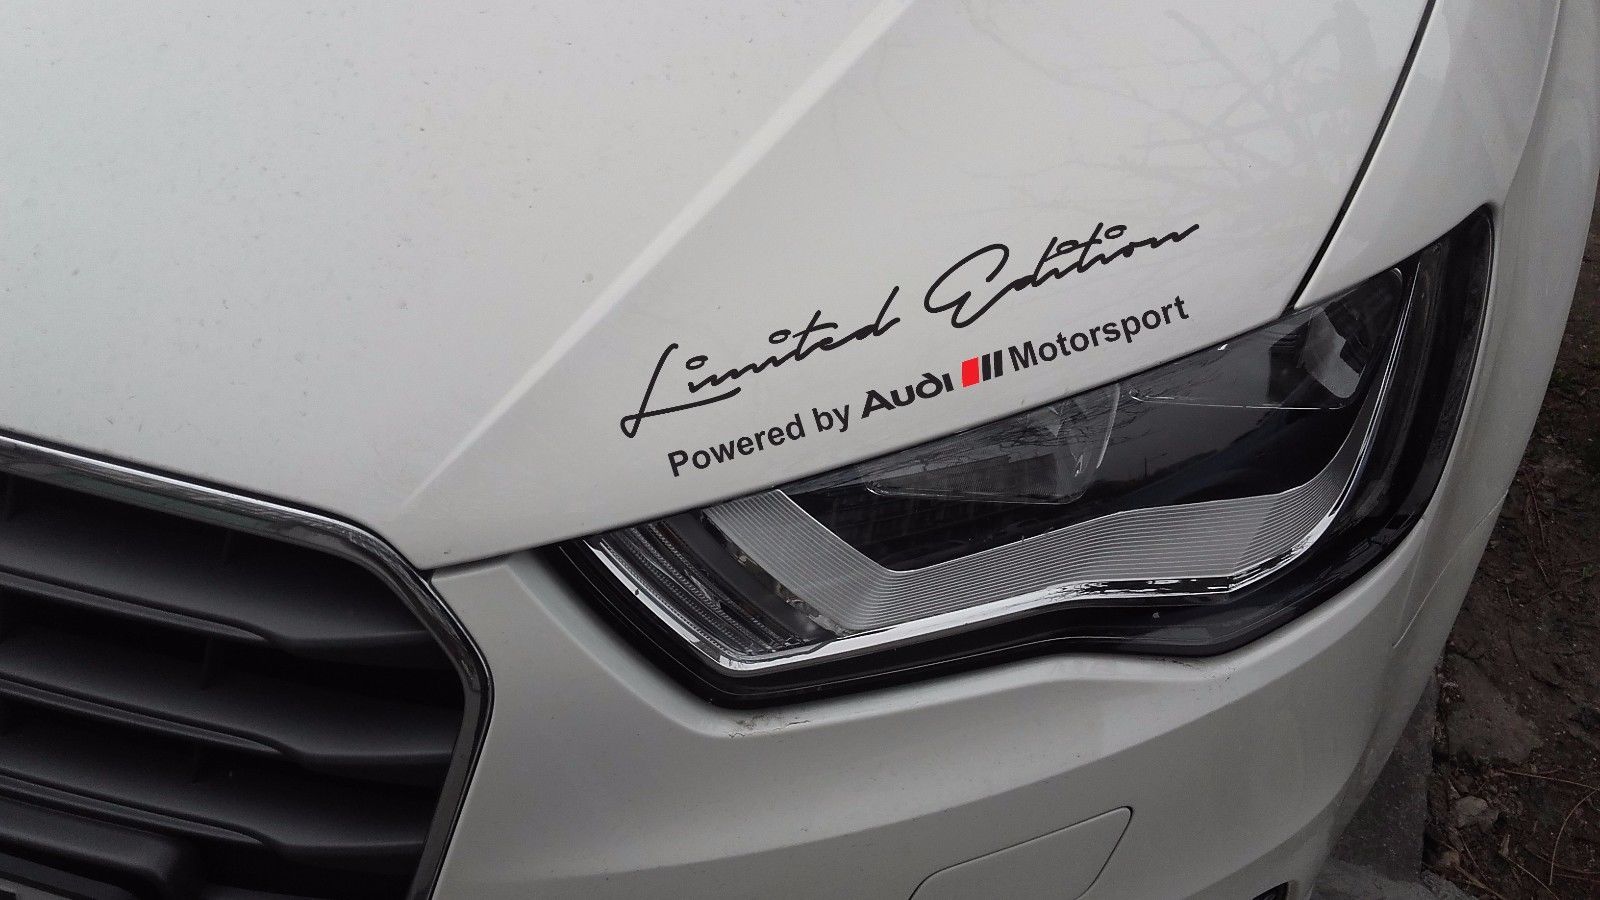 2 x Edición Limitada Audi Motorsport Etiqueta de calcomanía compatible con modelos AUDI